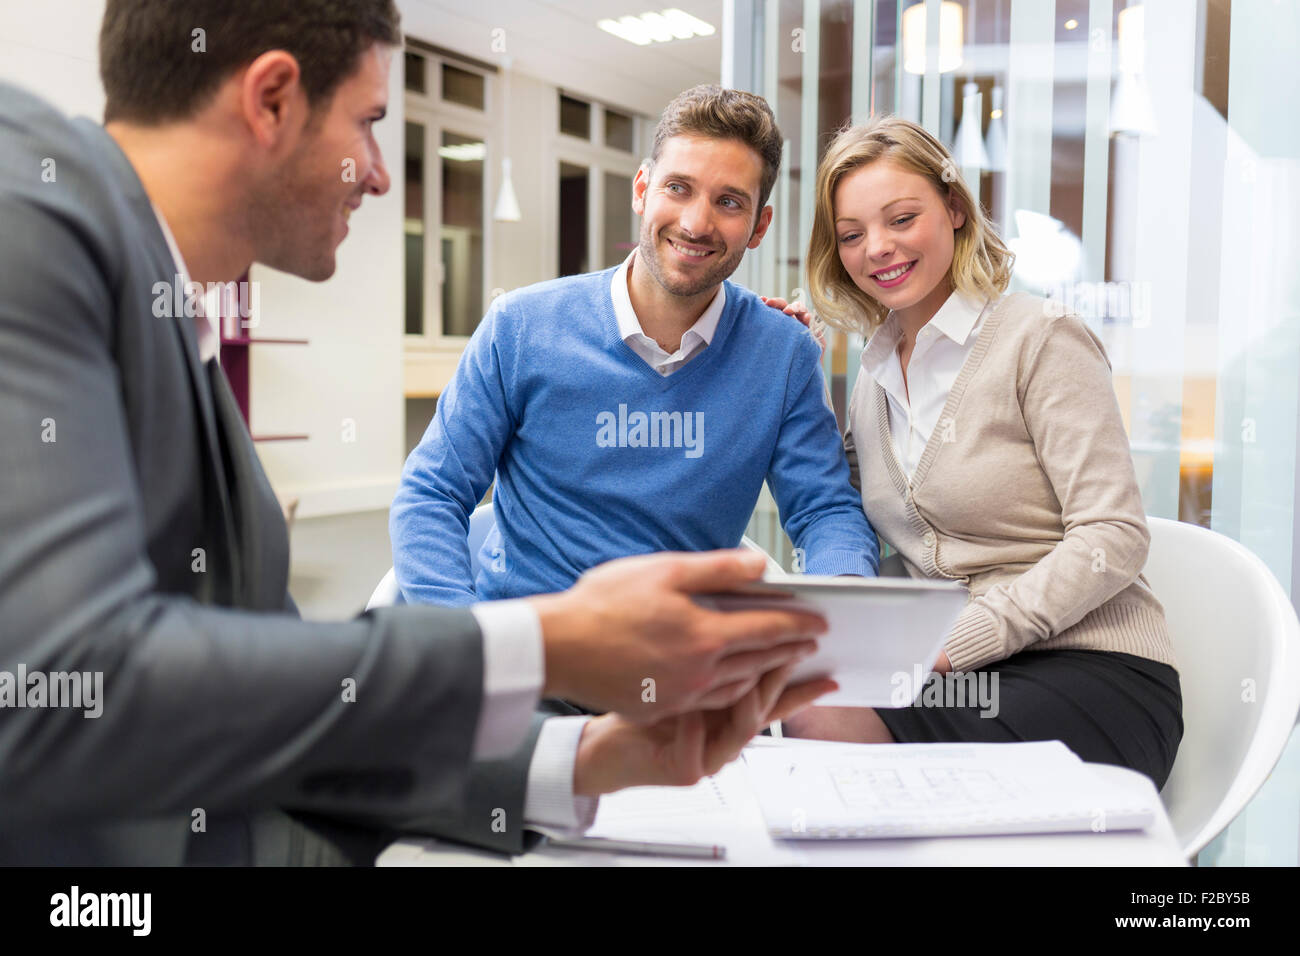 Conseiller financier à l'aide de tablette numérique et rencontre avec couple in office Banque D'Images